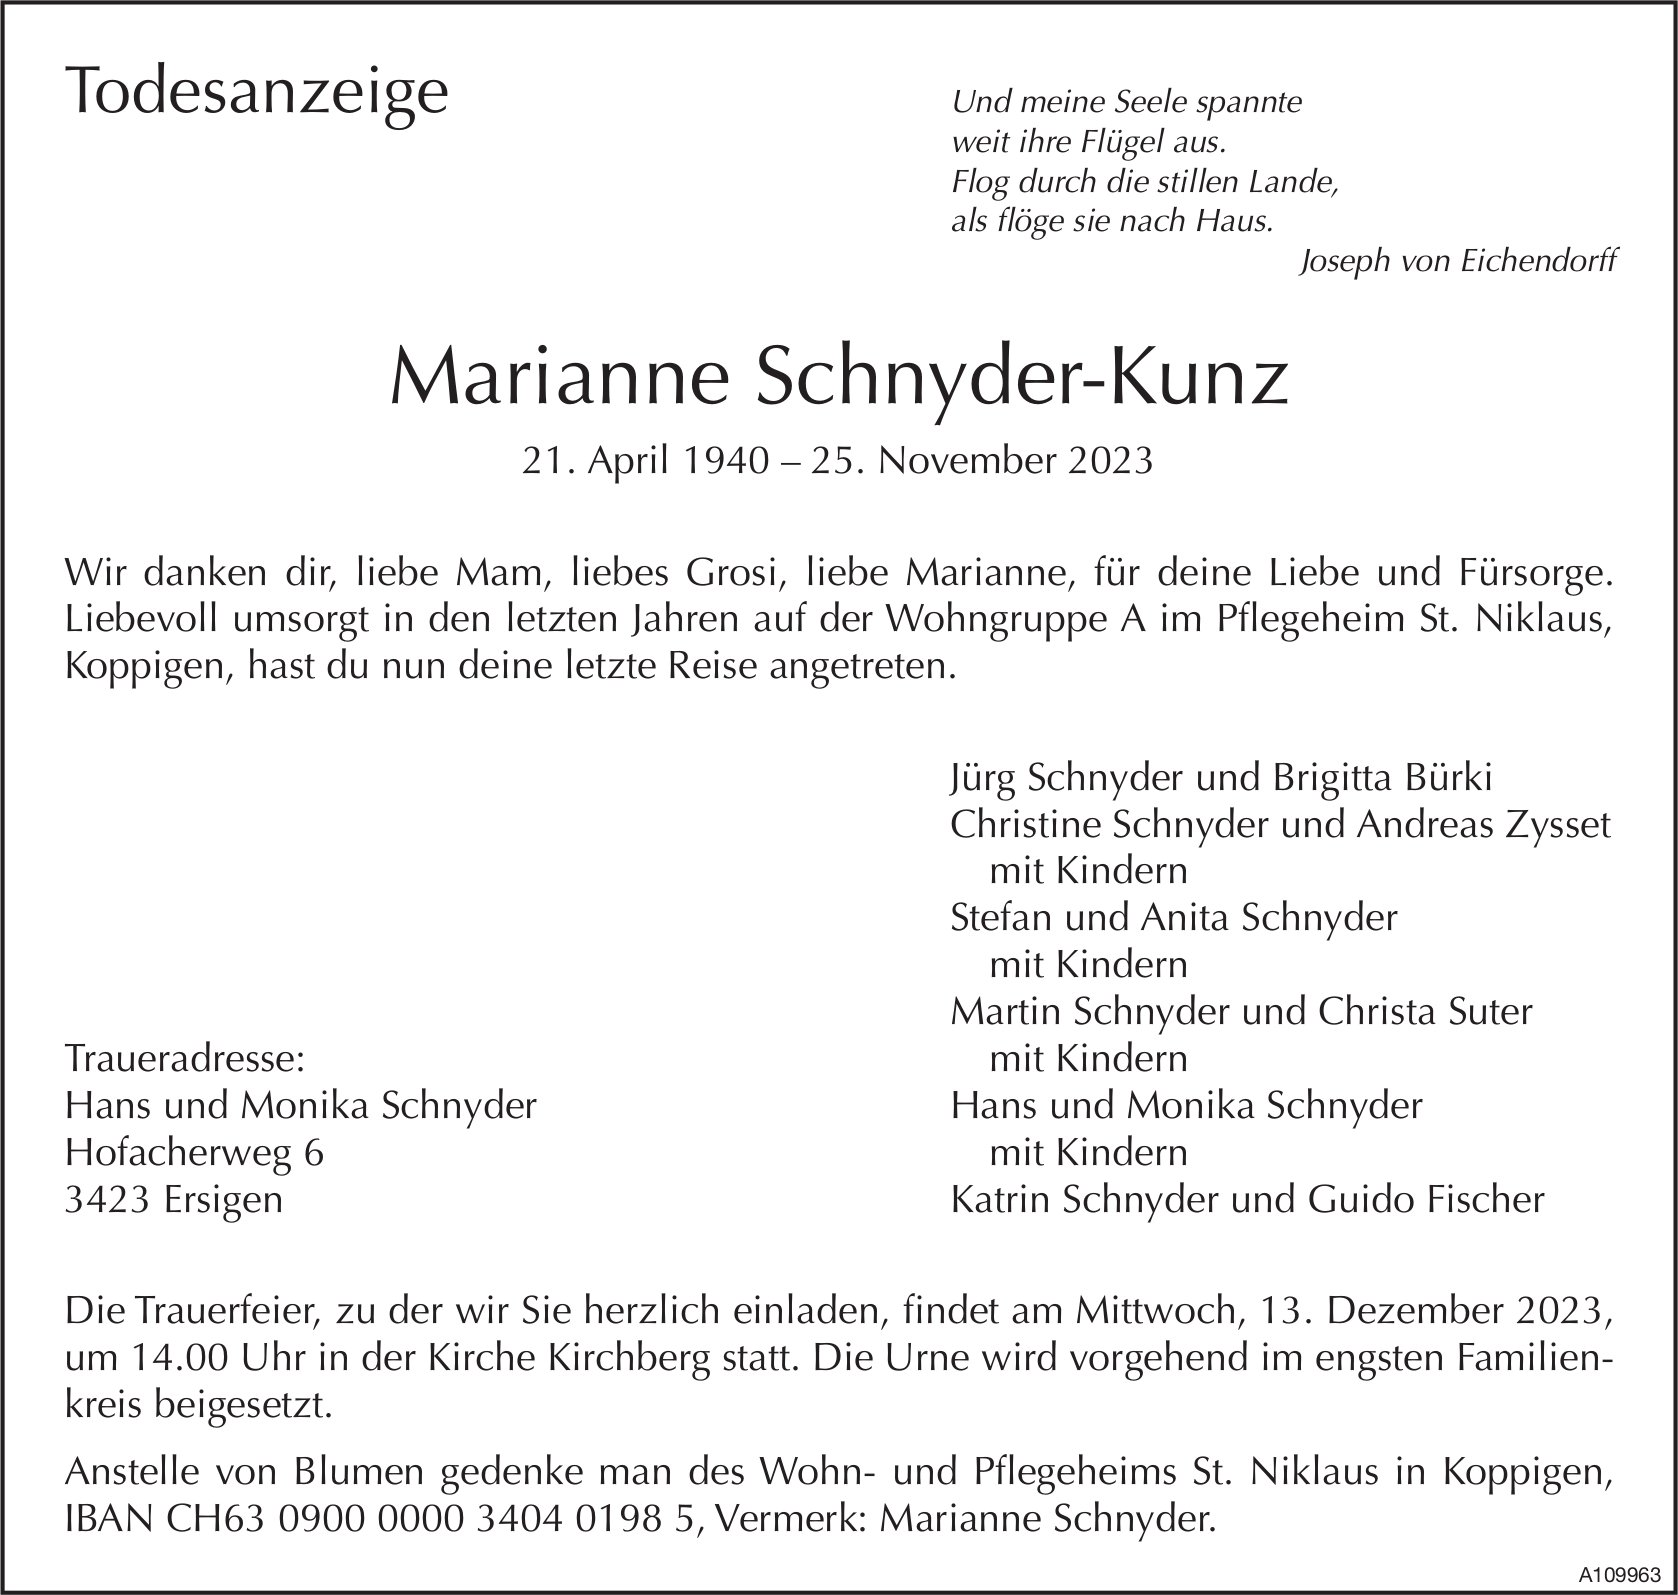 Marianne Schnyder-Kunz, November 2023 / TA